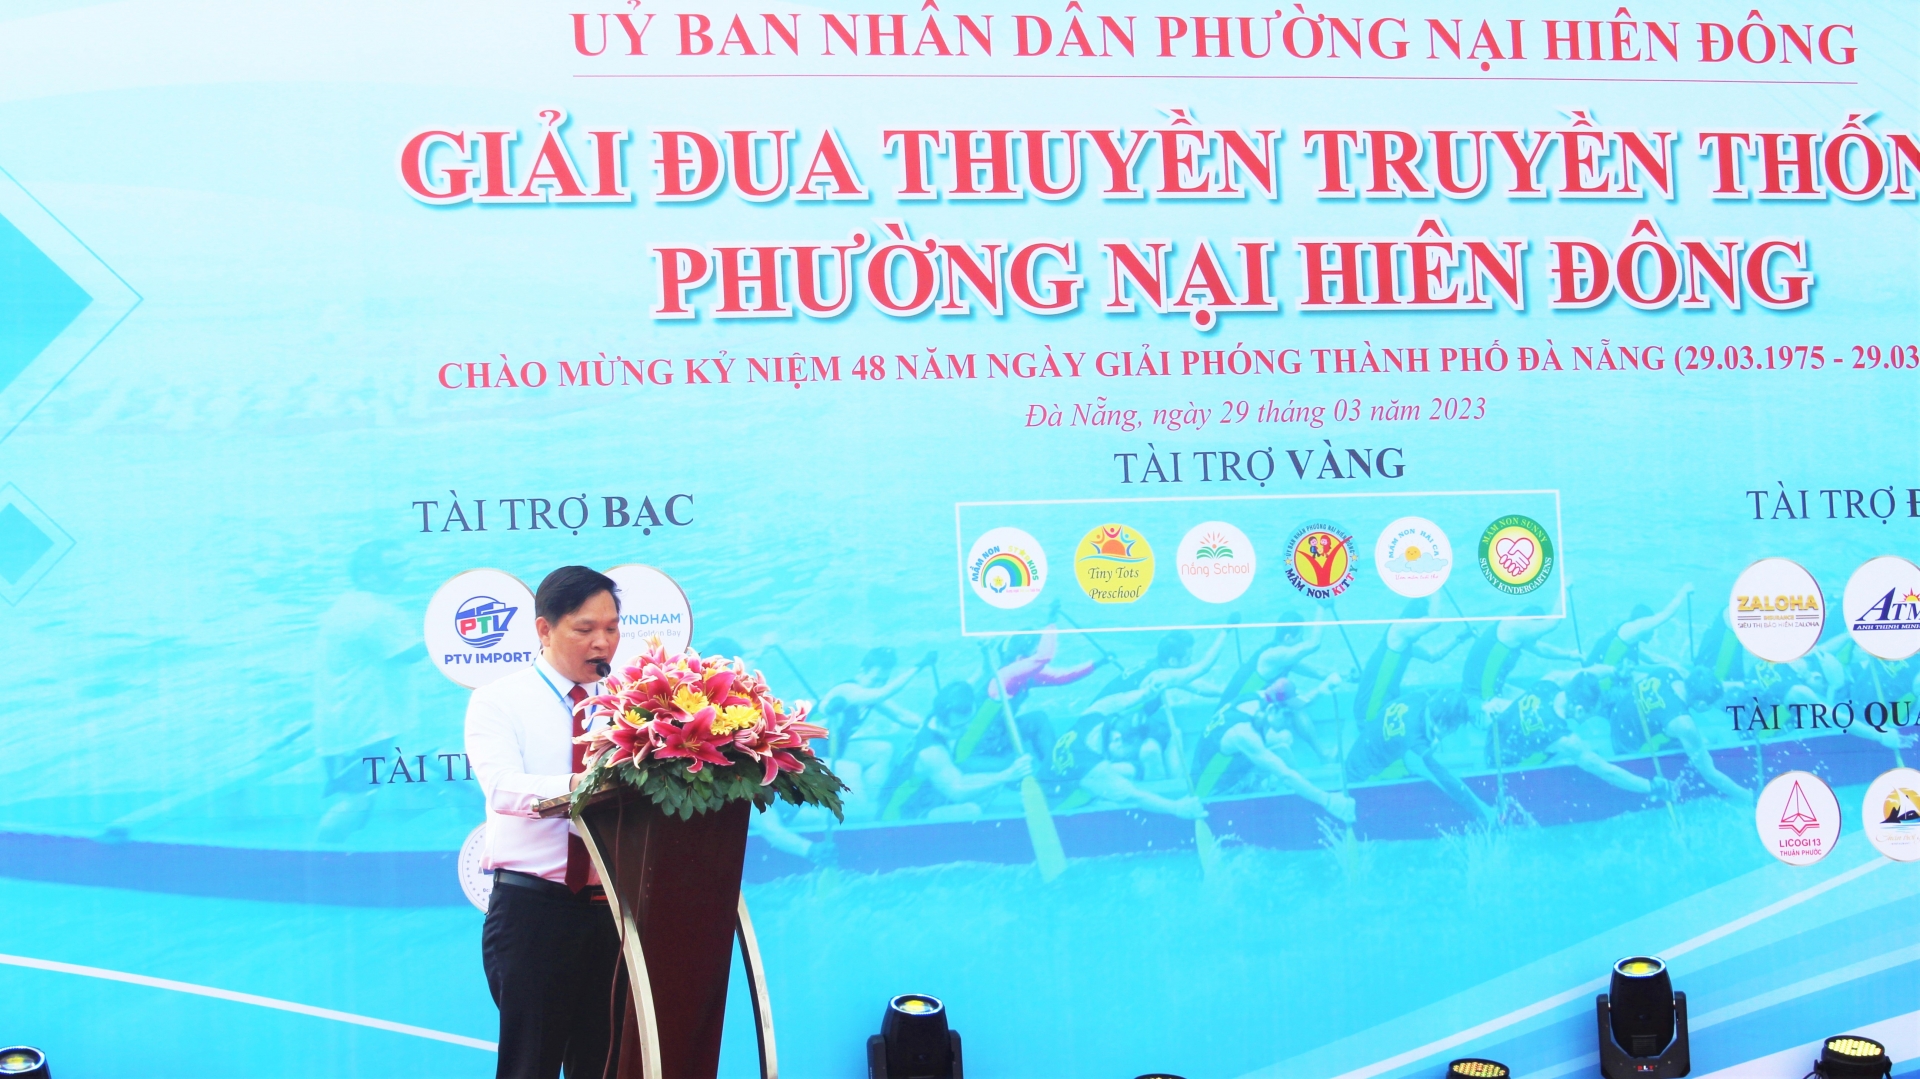 Ông Cao Đình Hải, Chủ tịch UBND phường Nại Hiên Đông phát biểu Khai mạc.